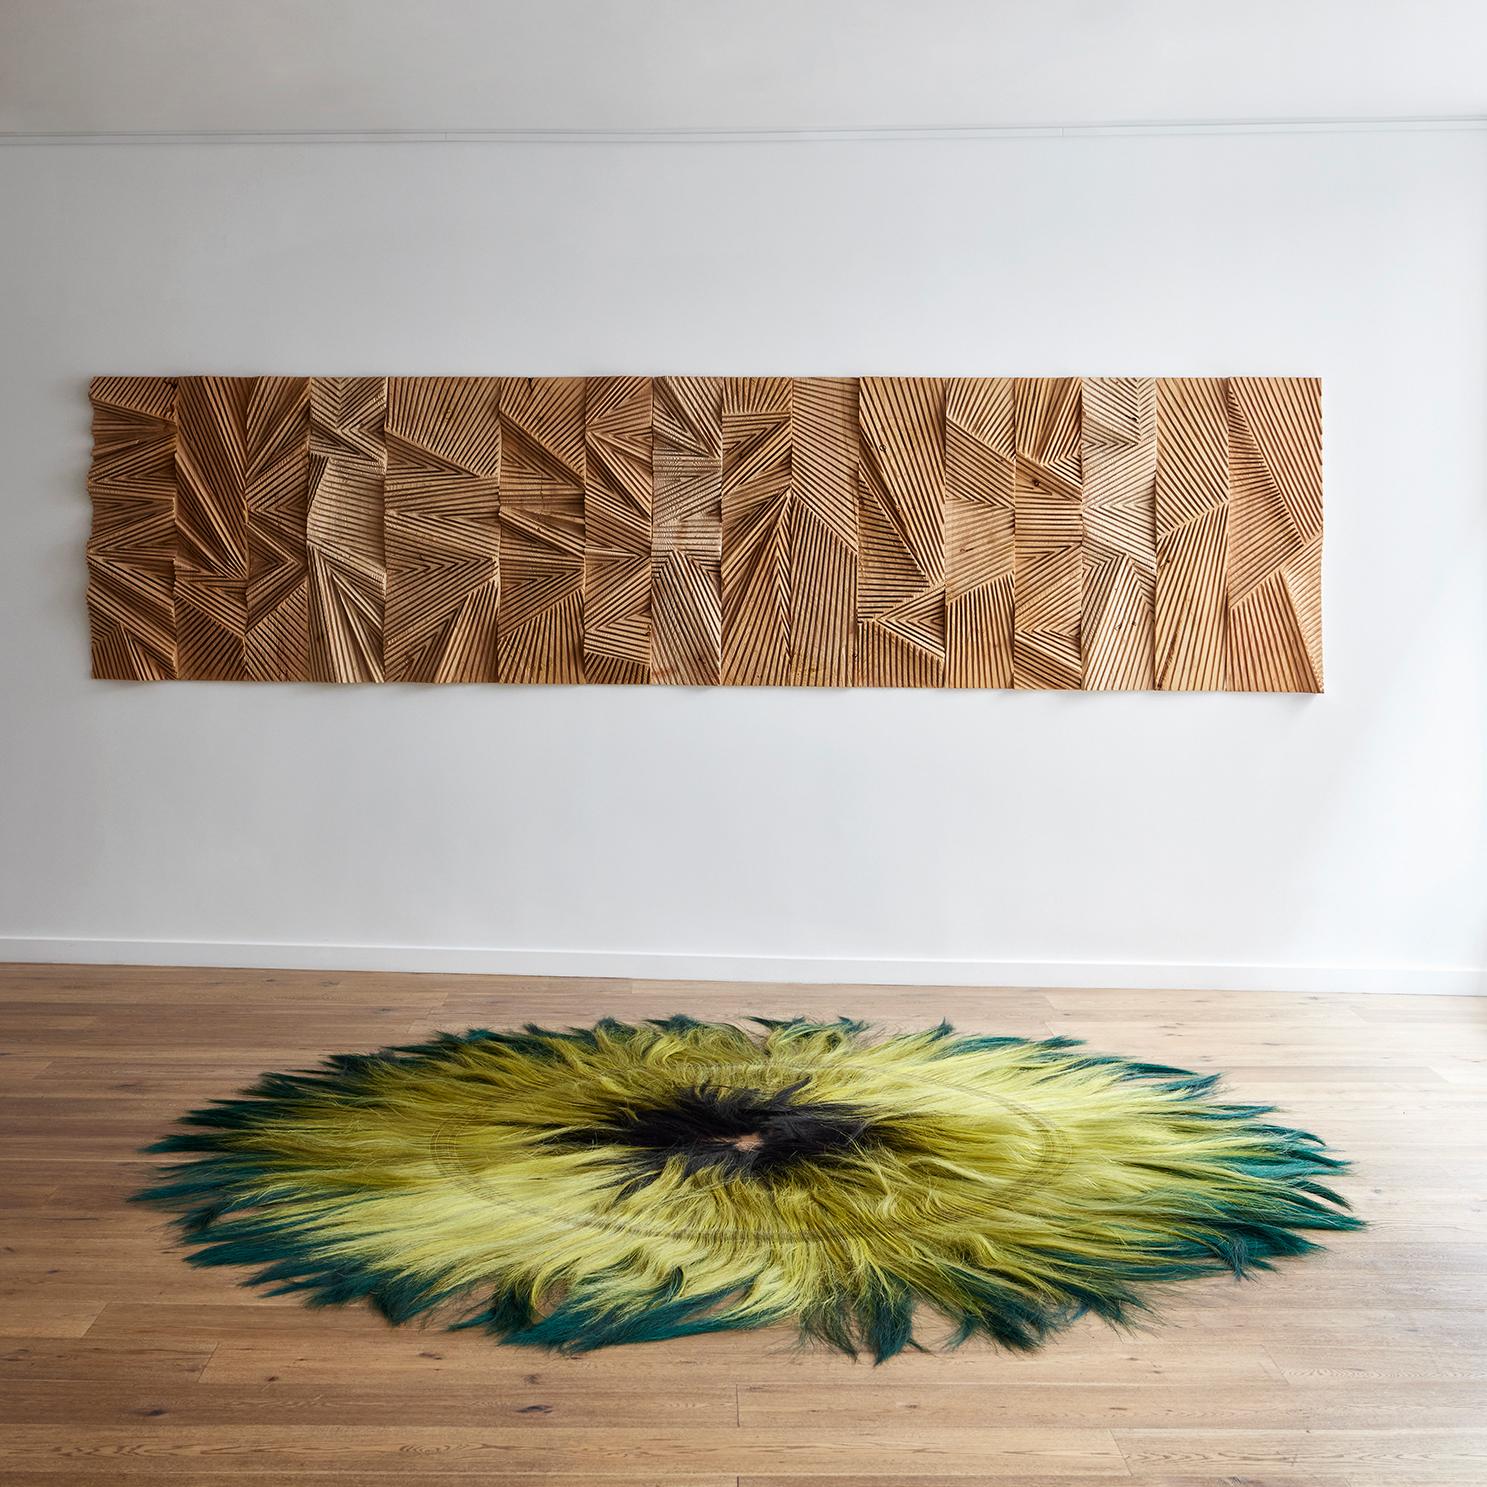 Zig Zag, eine skulpturale Holztafel aus Douglasienholz, ist ein Werk von Etienne Moyat, vertreten durch die Galerie Negropontes in Paris, Frankreich. 

Das Werk von Etienne Moyat spiegelt seinen Respekt und seine Liebe zur Natur wider. Als gelernter